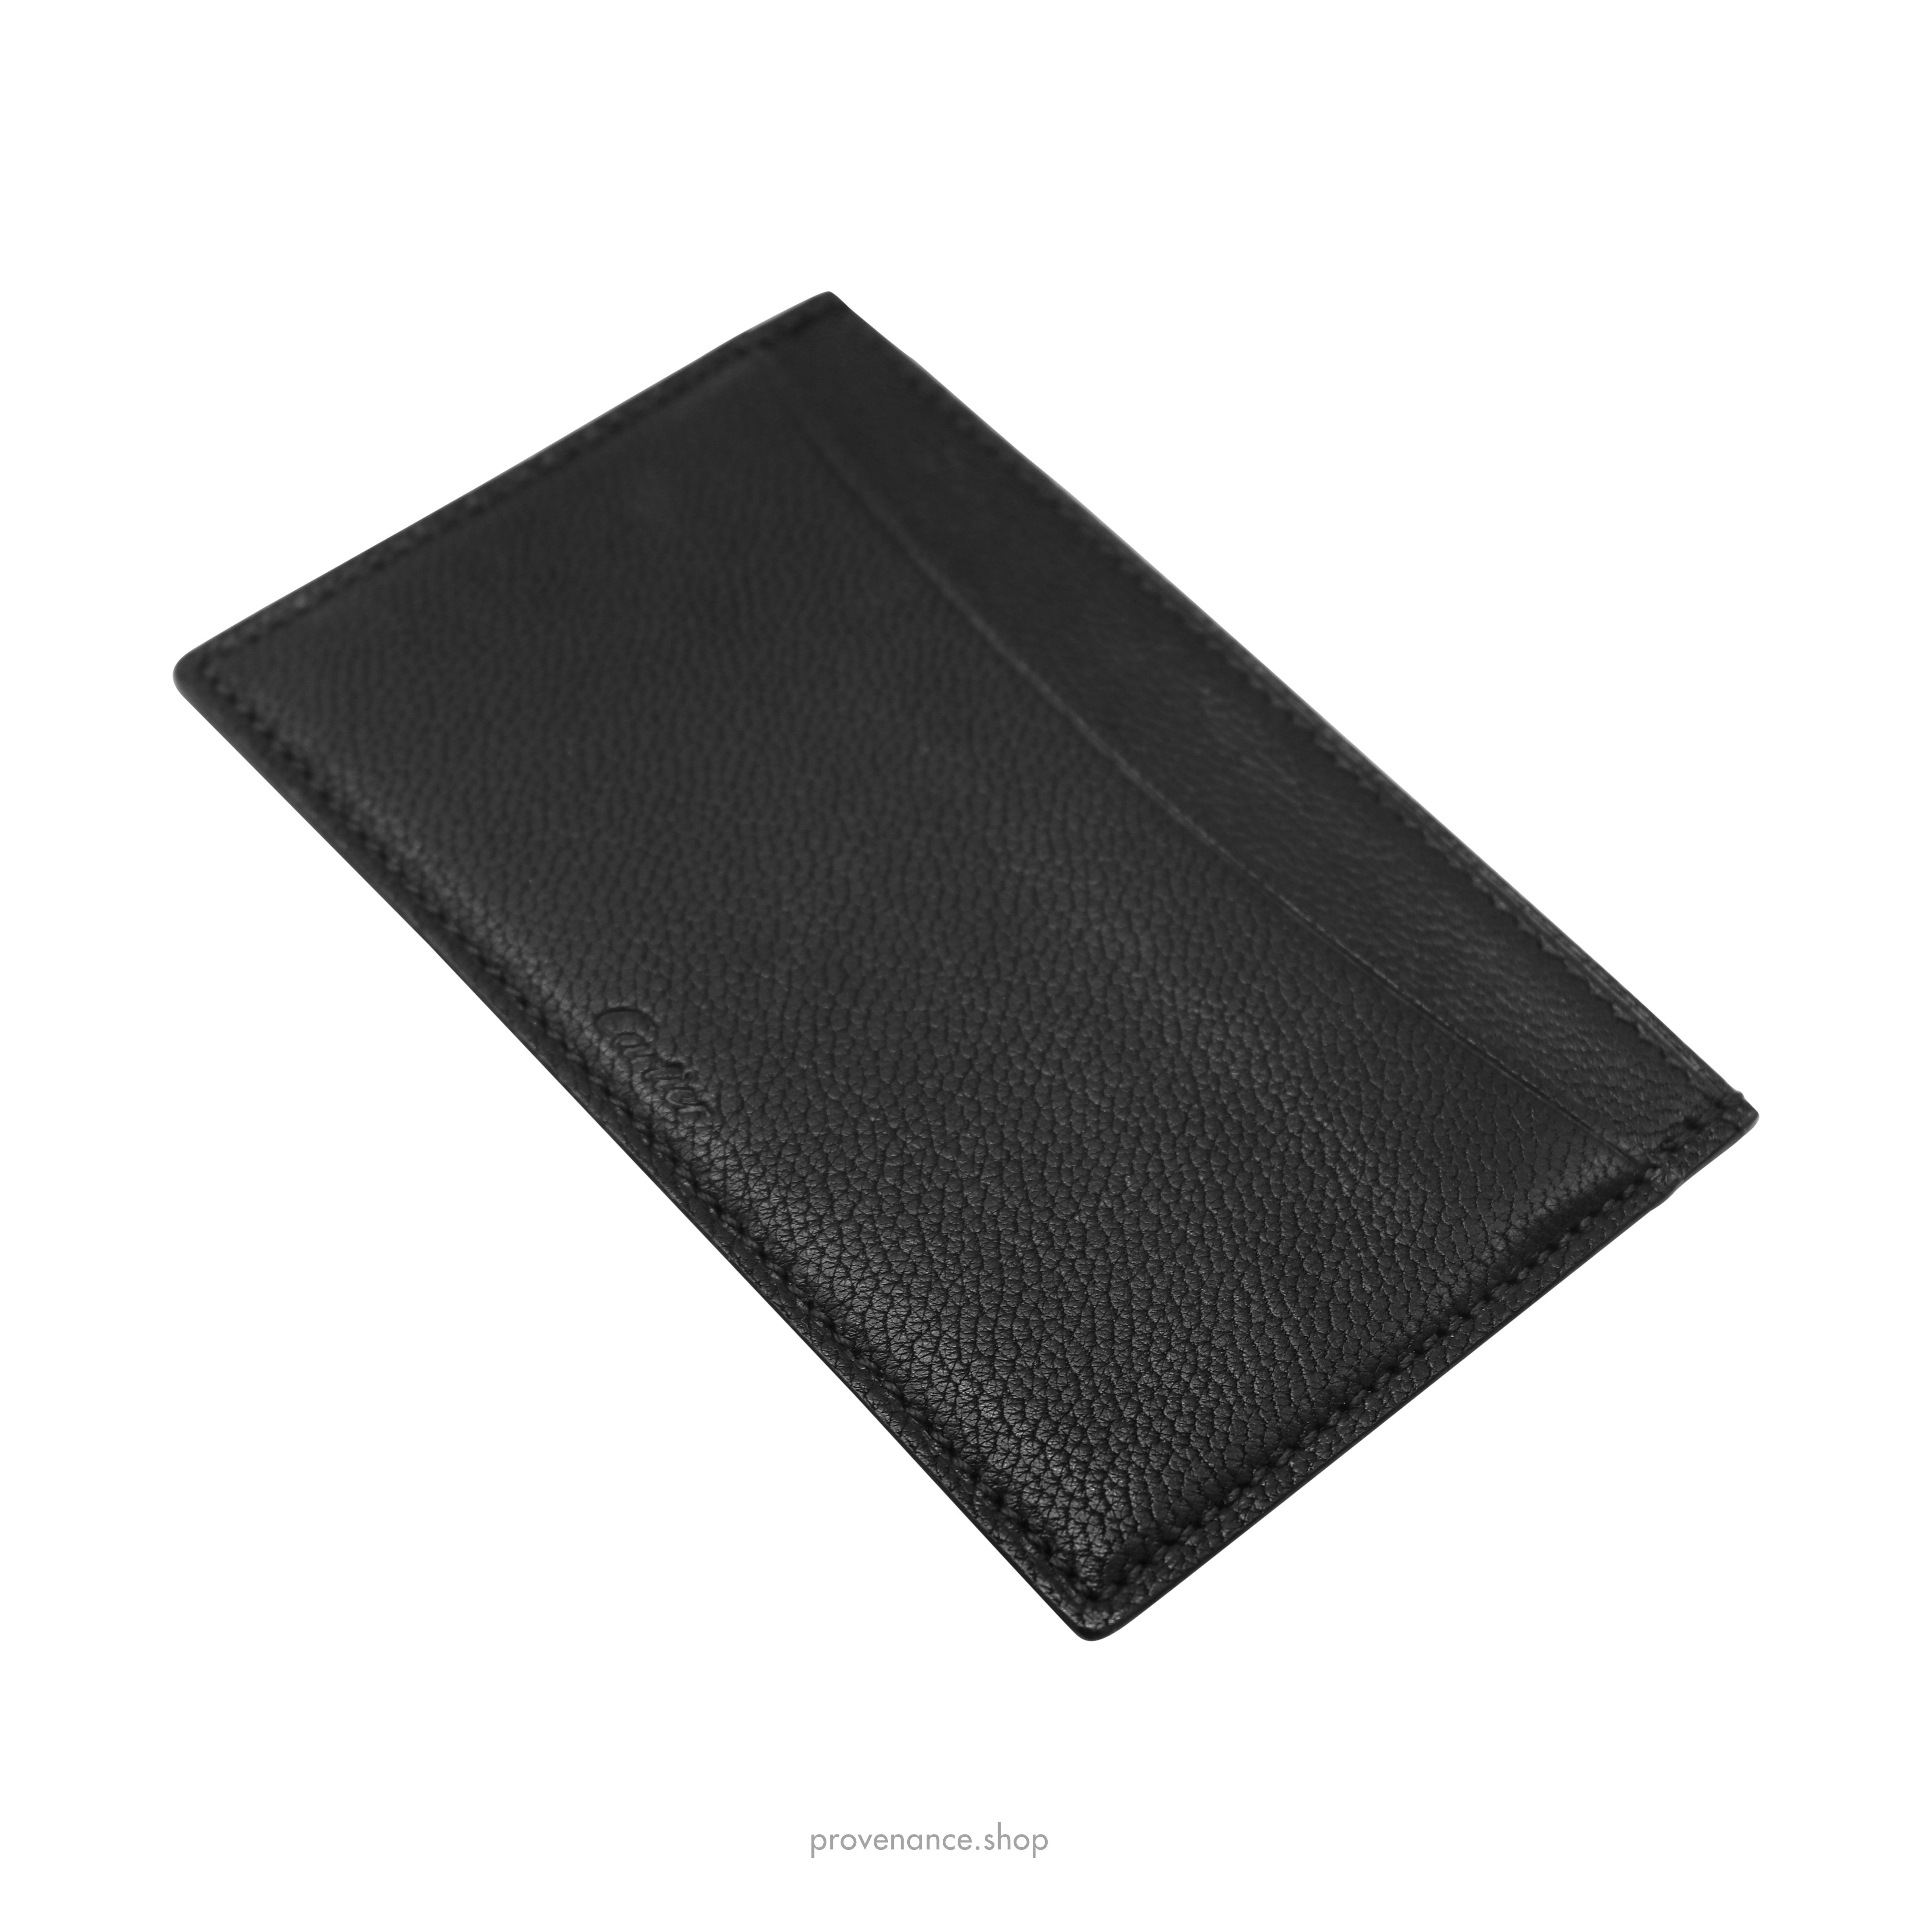 Card Holder Wallet - Black Chevre Leather - 5